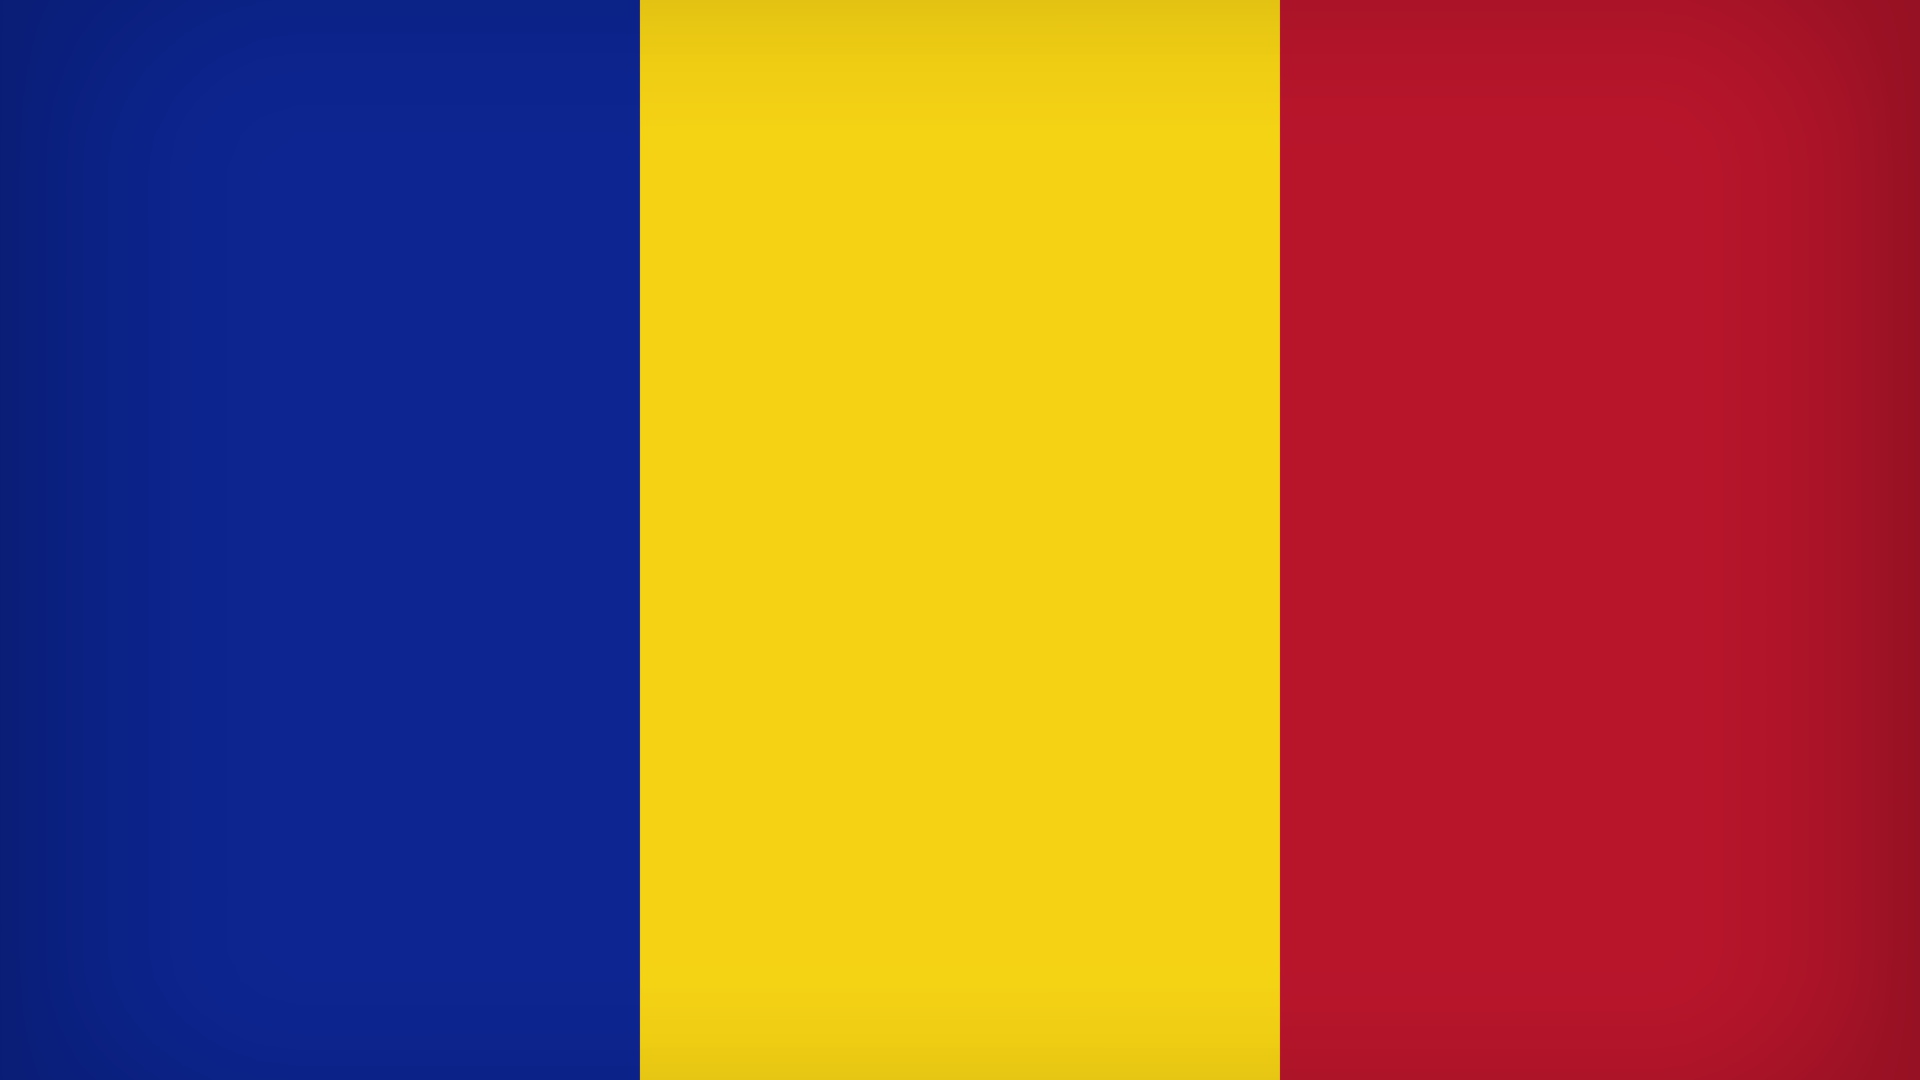 Оформление румынской визы